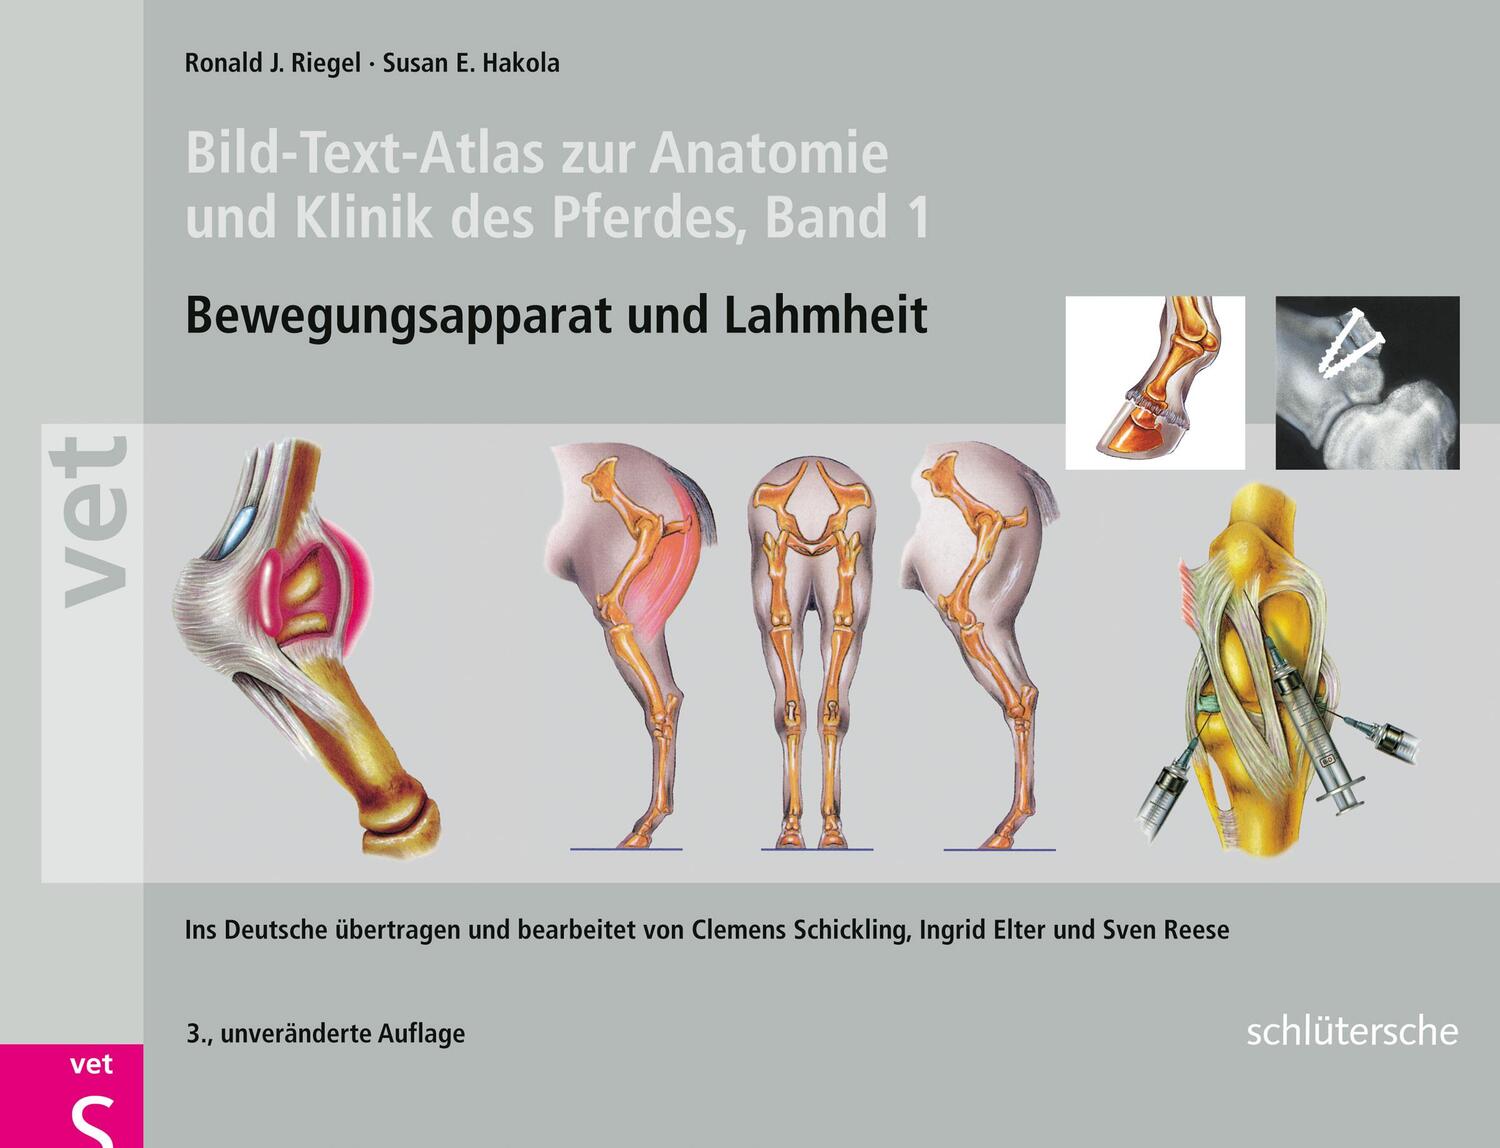 Bild-Text-Atlas zur Anatomie und Klinik des Pferdes - Riegel, Ronald J.